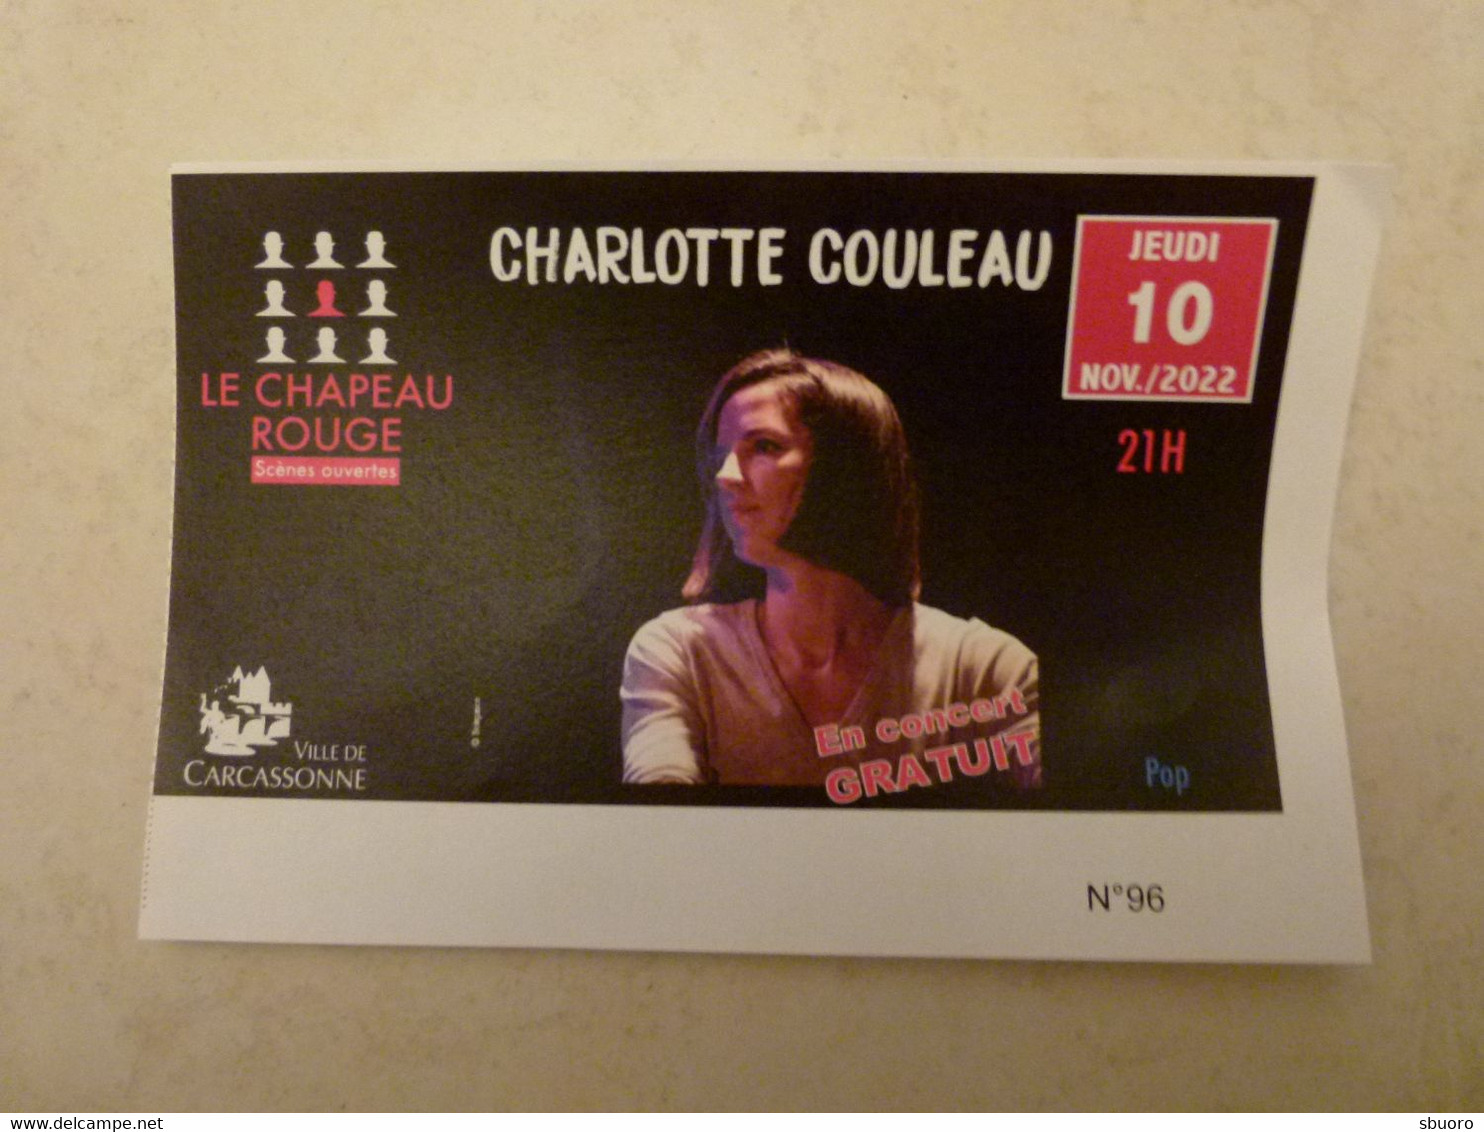 Charlotte Couleau, Chant Et Piano - 10 Novembre 2022 - Carcassonne (Aude) - Le Chapeau Rouge, Scènes Ouvertes. Daran - Tickets De Concerts